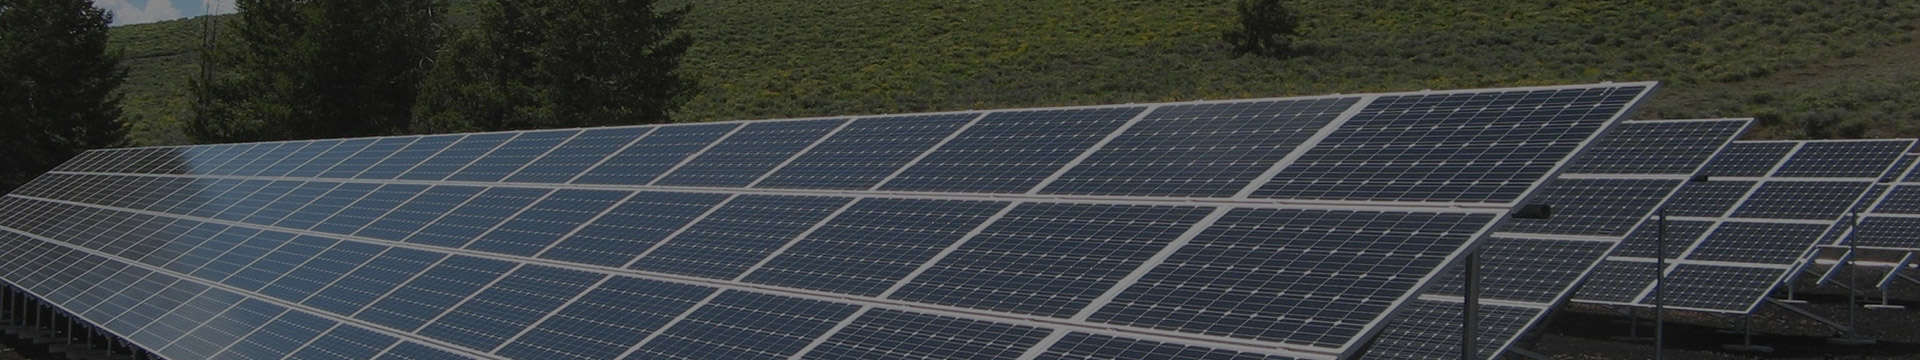 320 Watt Solar Panel